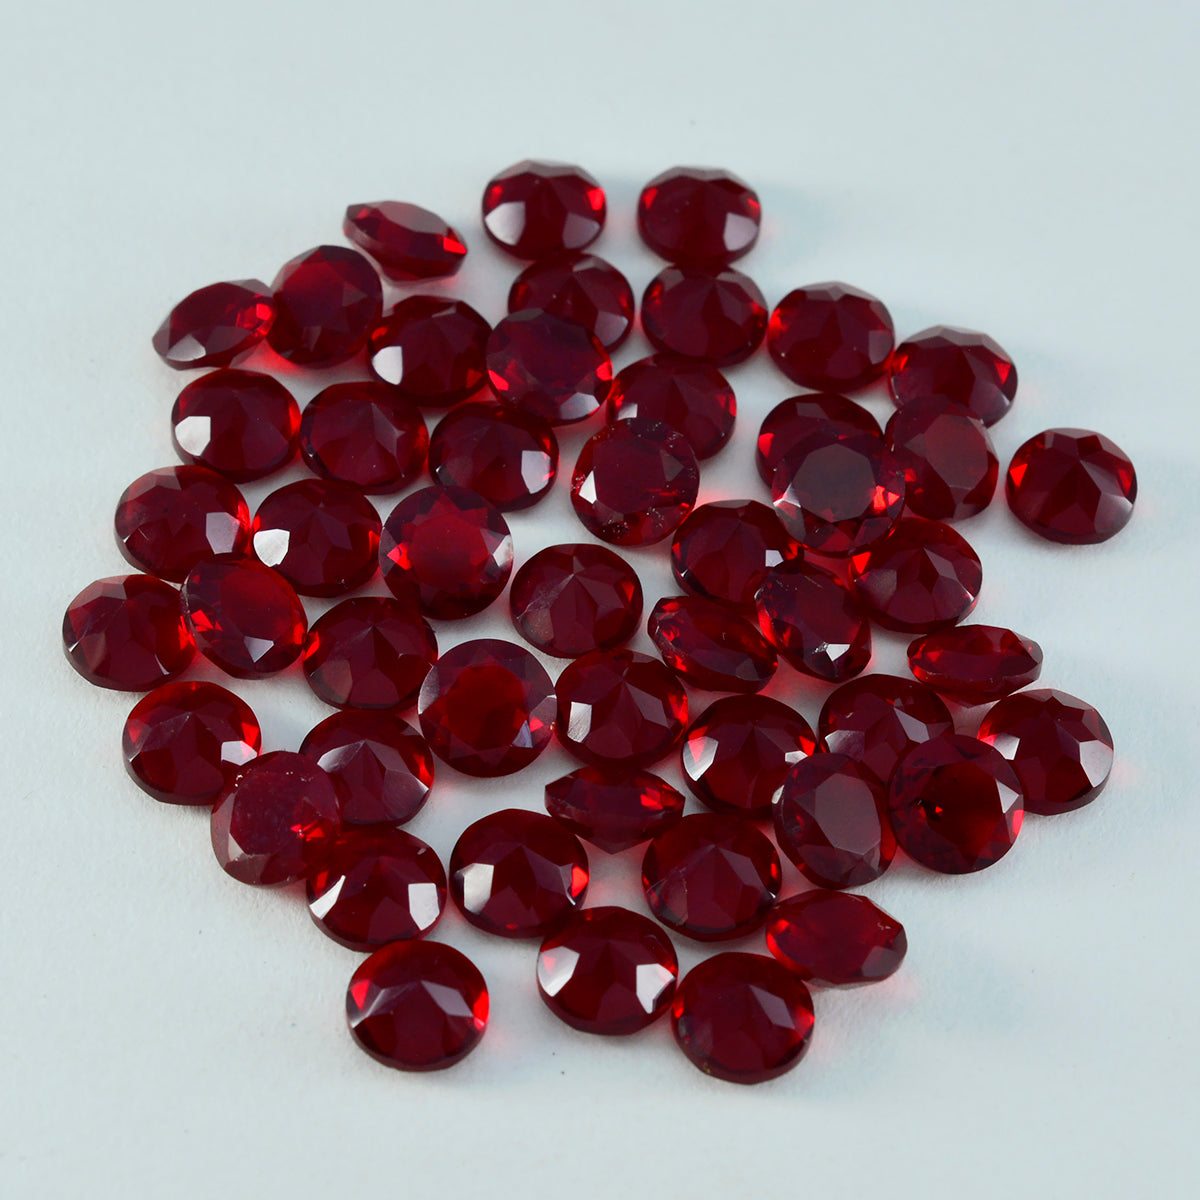 Riyogems 1 pièce rubis rouge cz à facettes 6x6mm forme ronde bonne qualité pierre précieuse en vrac